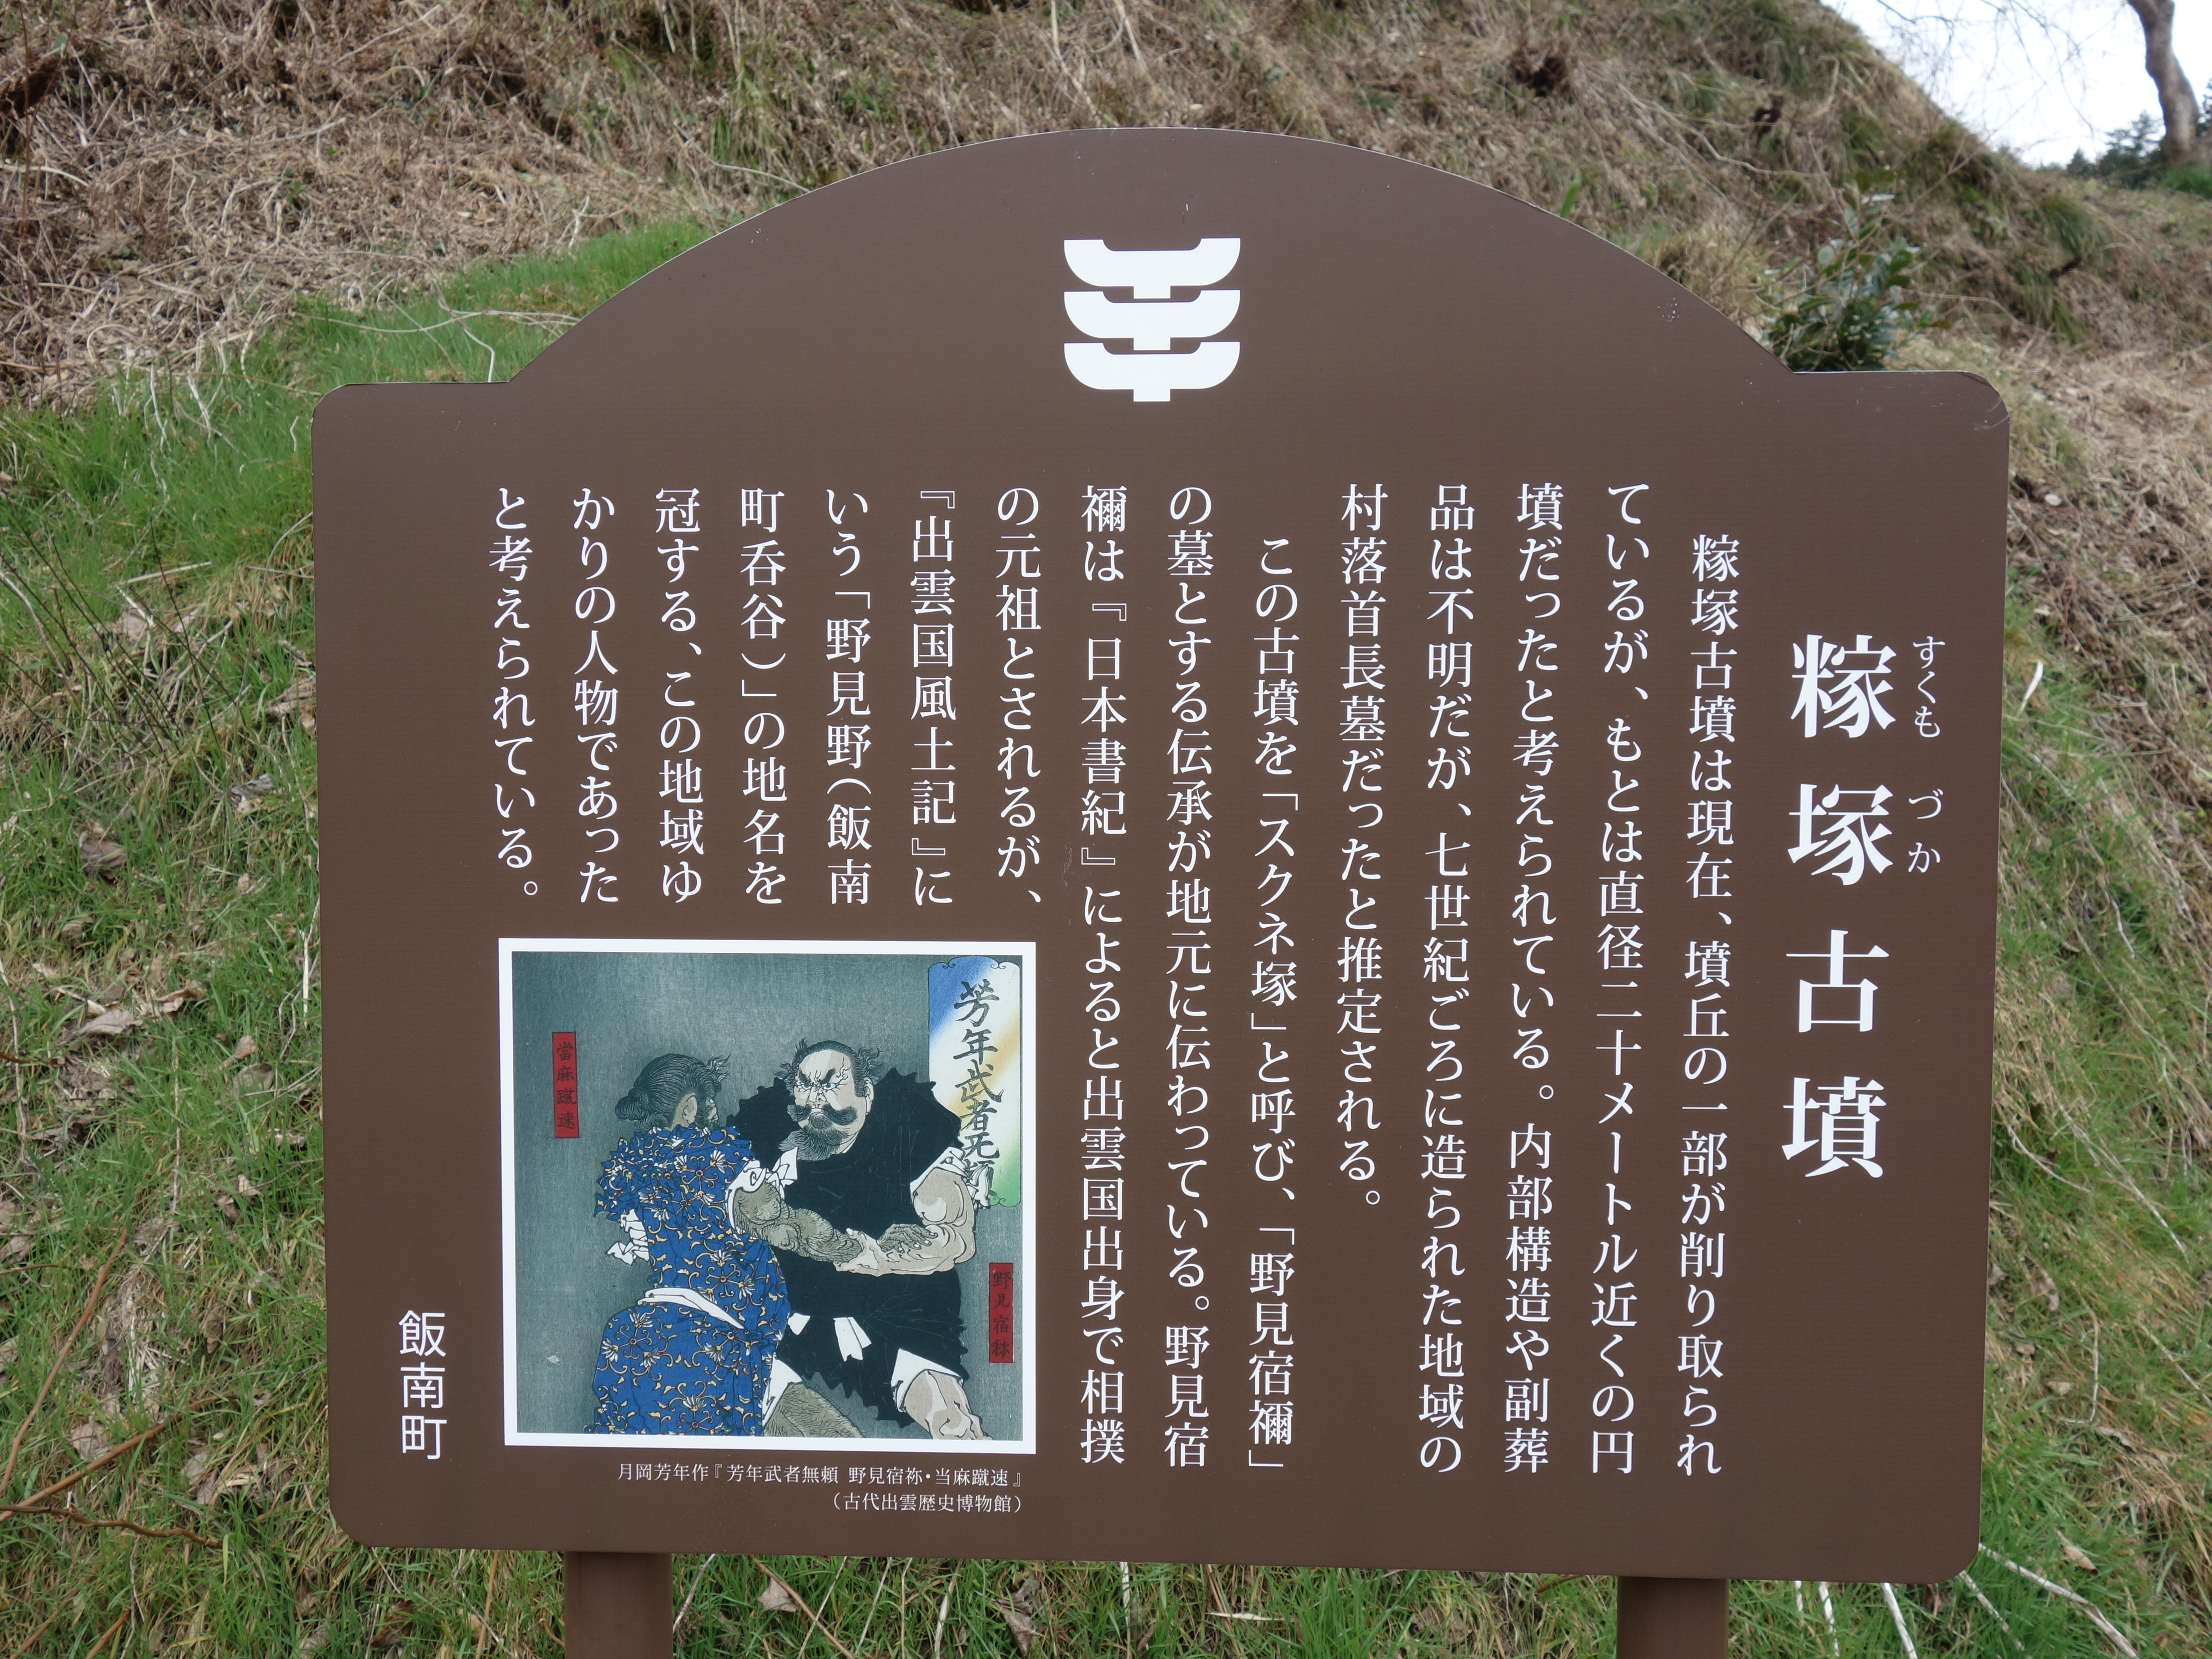 野見宿禰のお墓 観光 コラム 裏情報 イベント情報満載の島根を応援する島根県公認コミュニティ リメンバーしまね